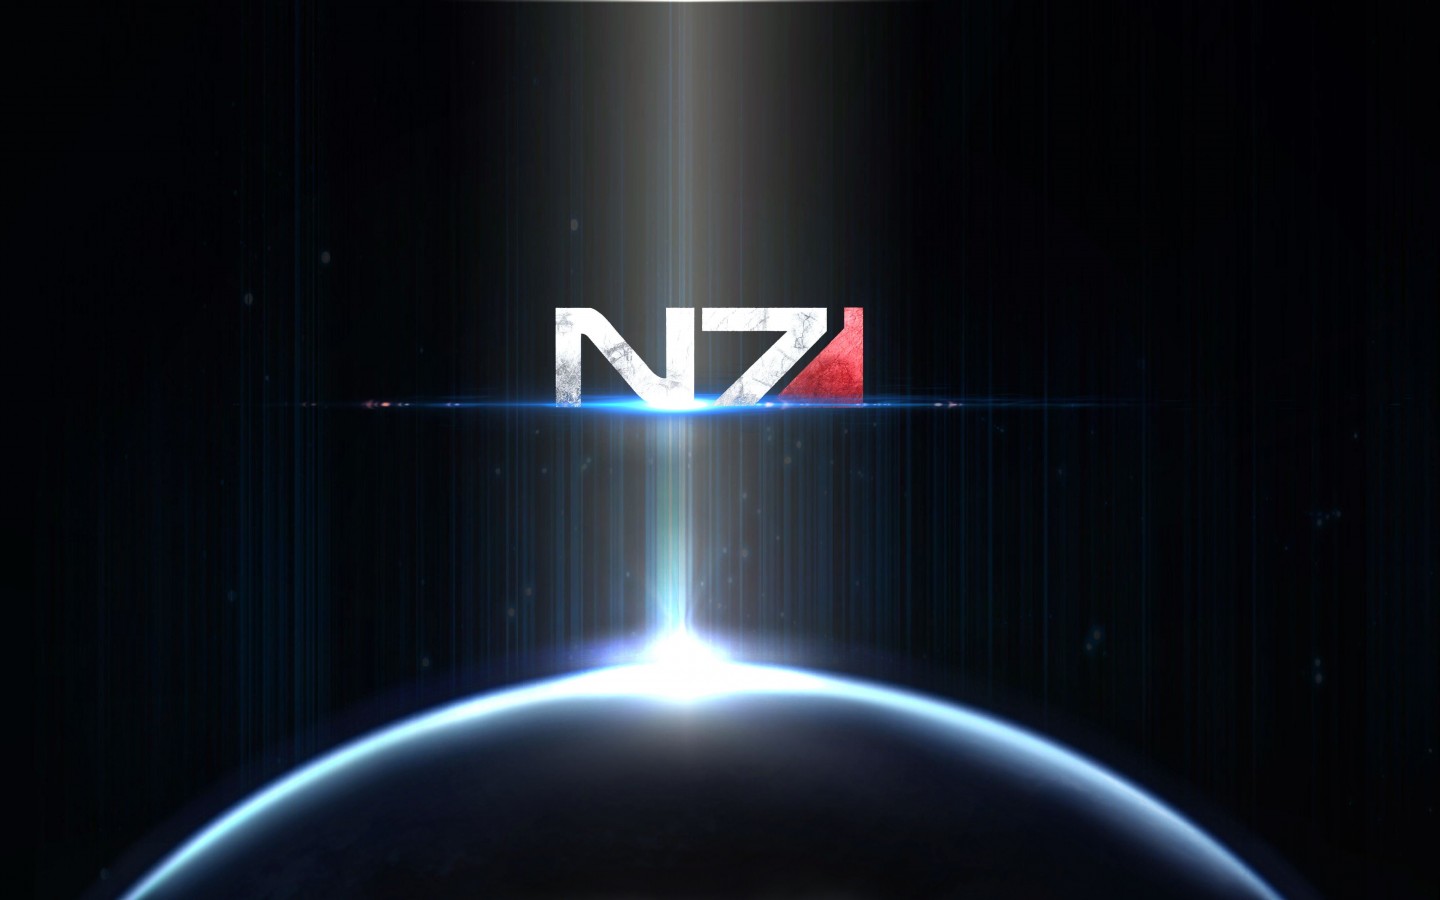 Games / N7 Wallpaper - Mass Effect N7 Wallpaper Hd , HD Wallpaper & Backgrounds